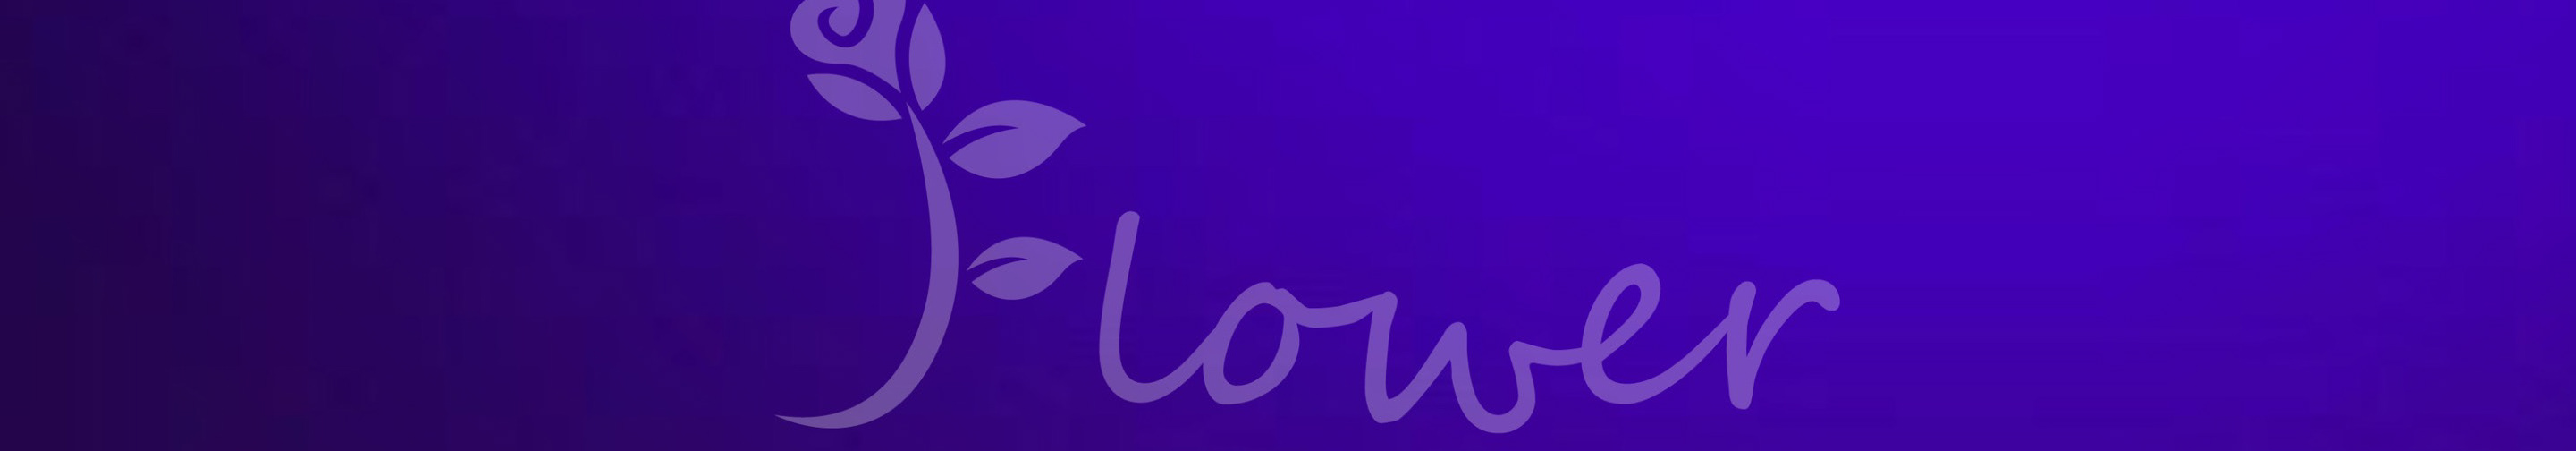 Florzinha ⠀s profilbanner